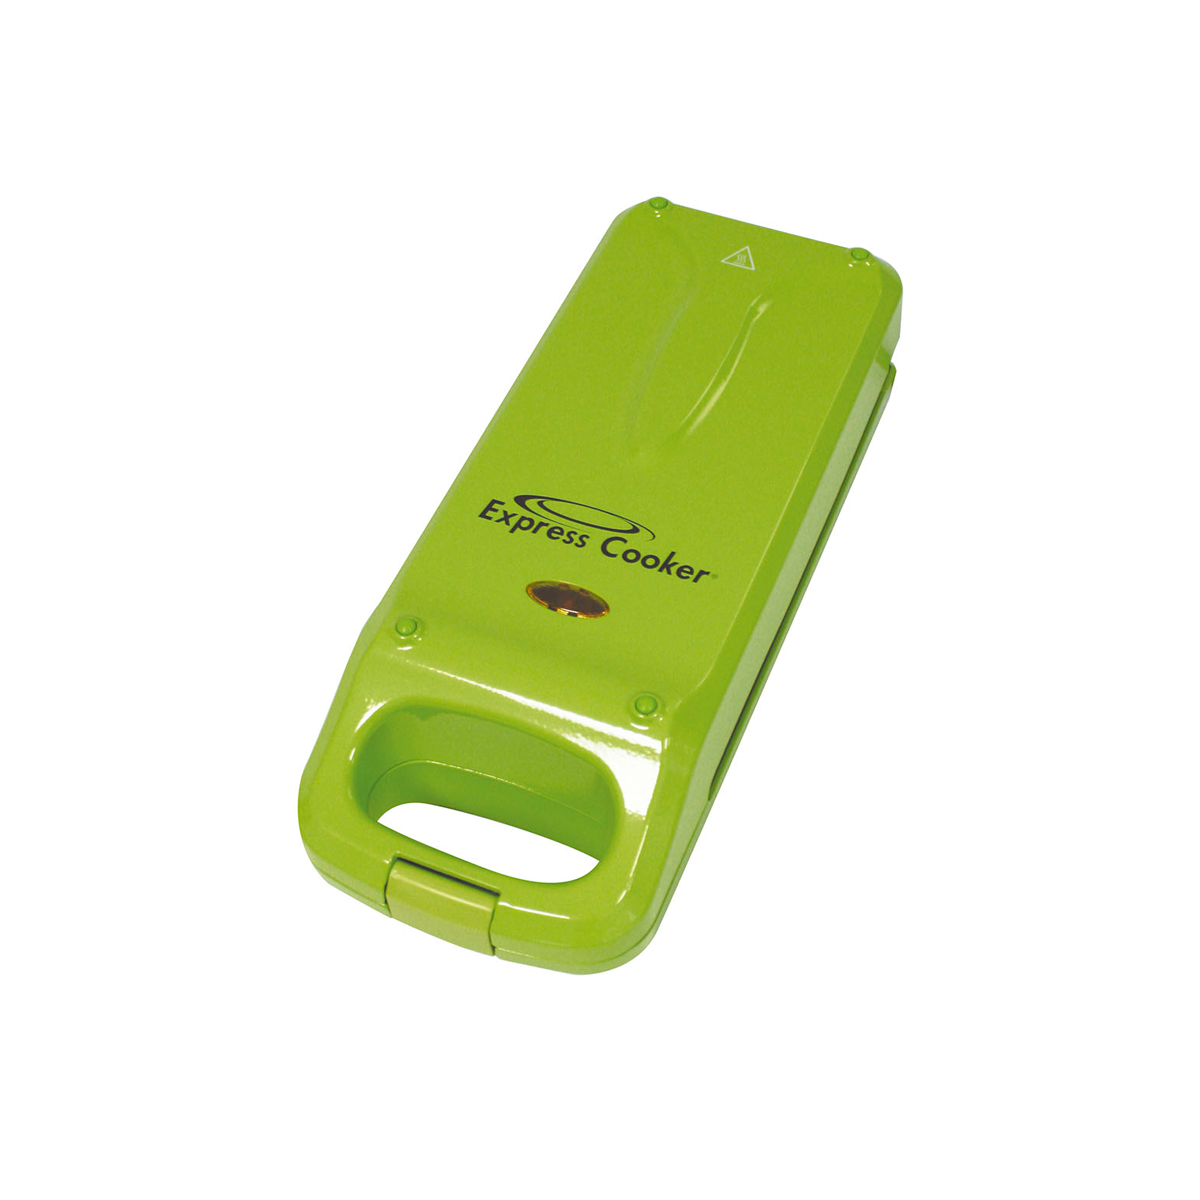 BEST DIRECT Express Cooker® Watt) grün Multigrill, (800